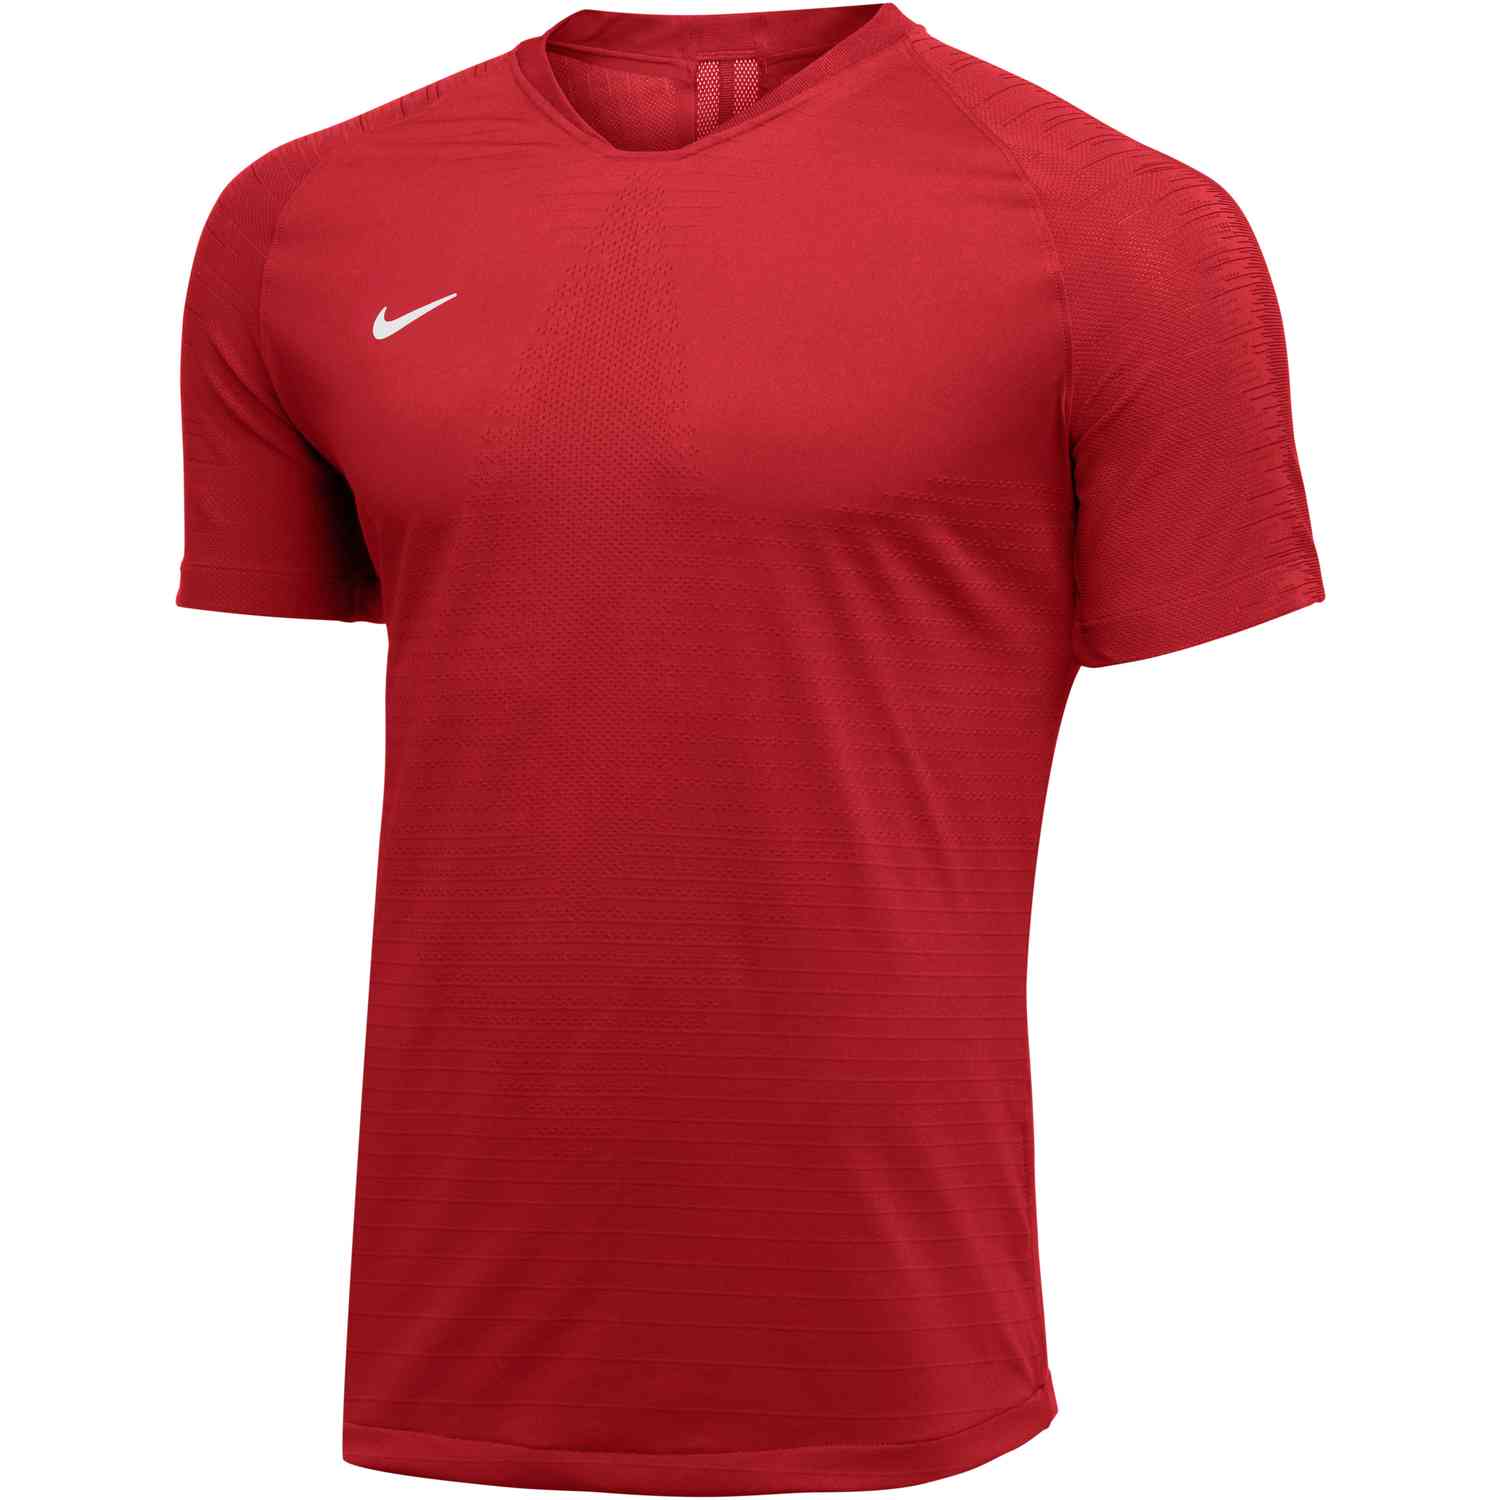 Nike Vaporknit II Jersey - University Red - SoccerPro